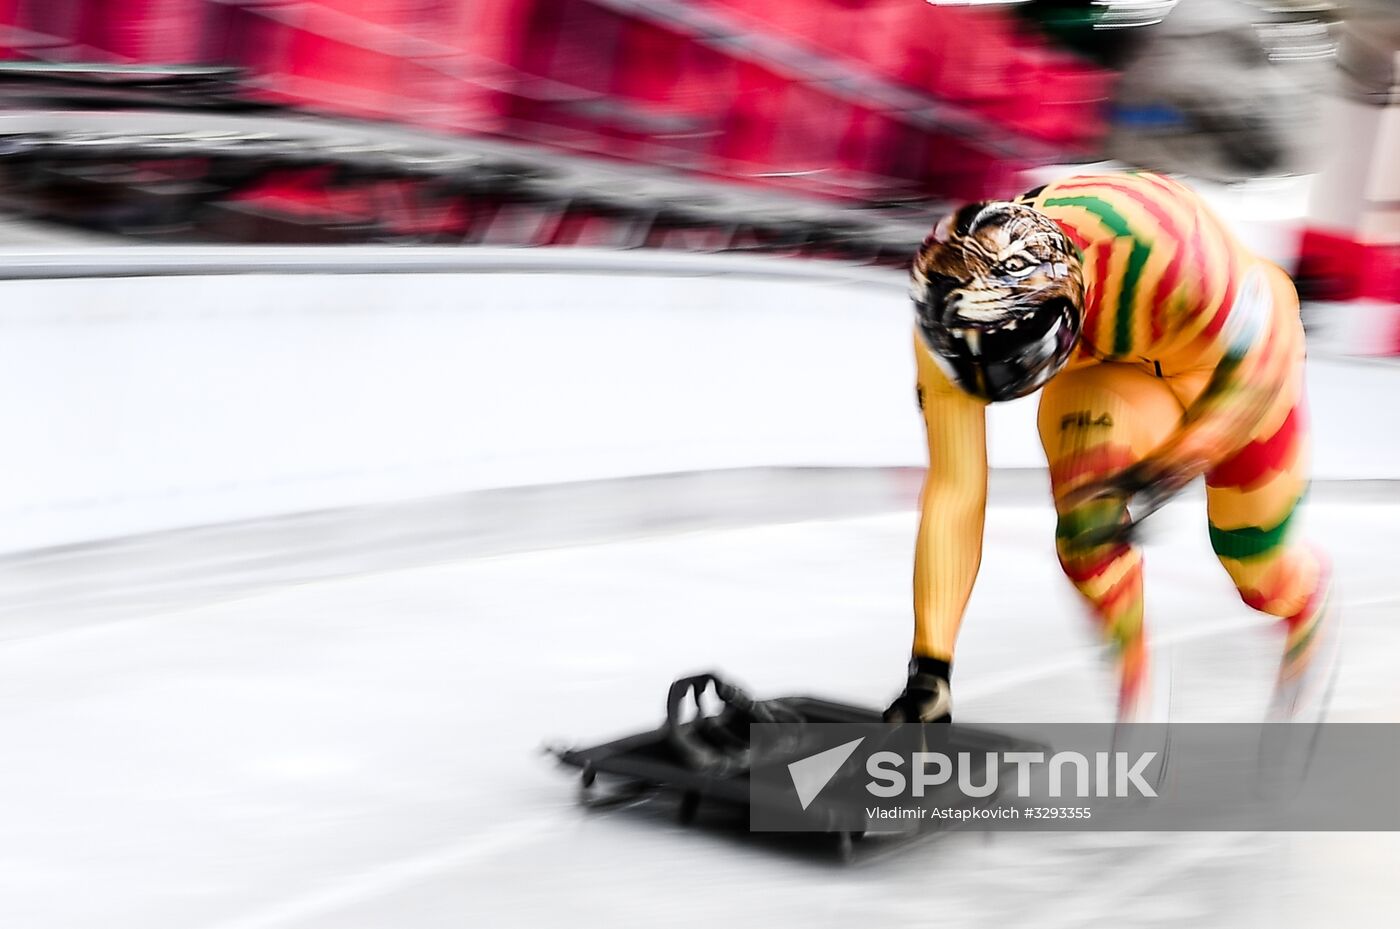 2018 Winter Olympics. Men's skeleton. Training